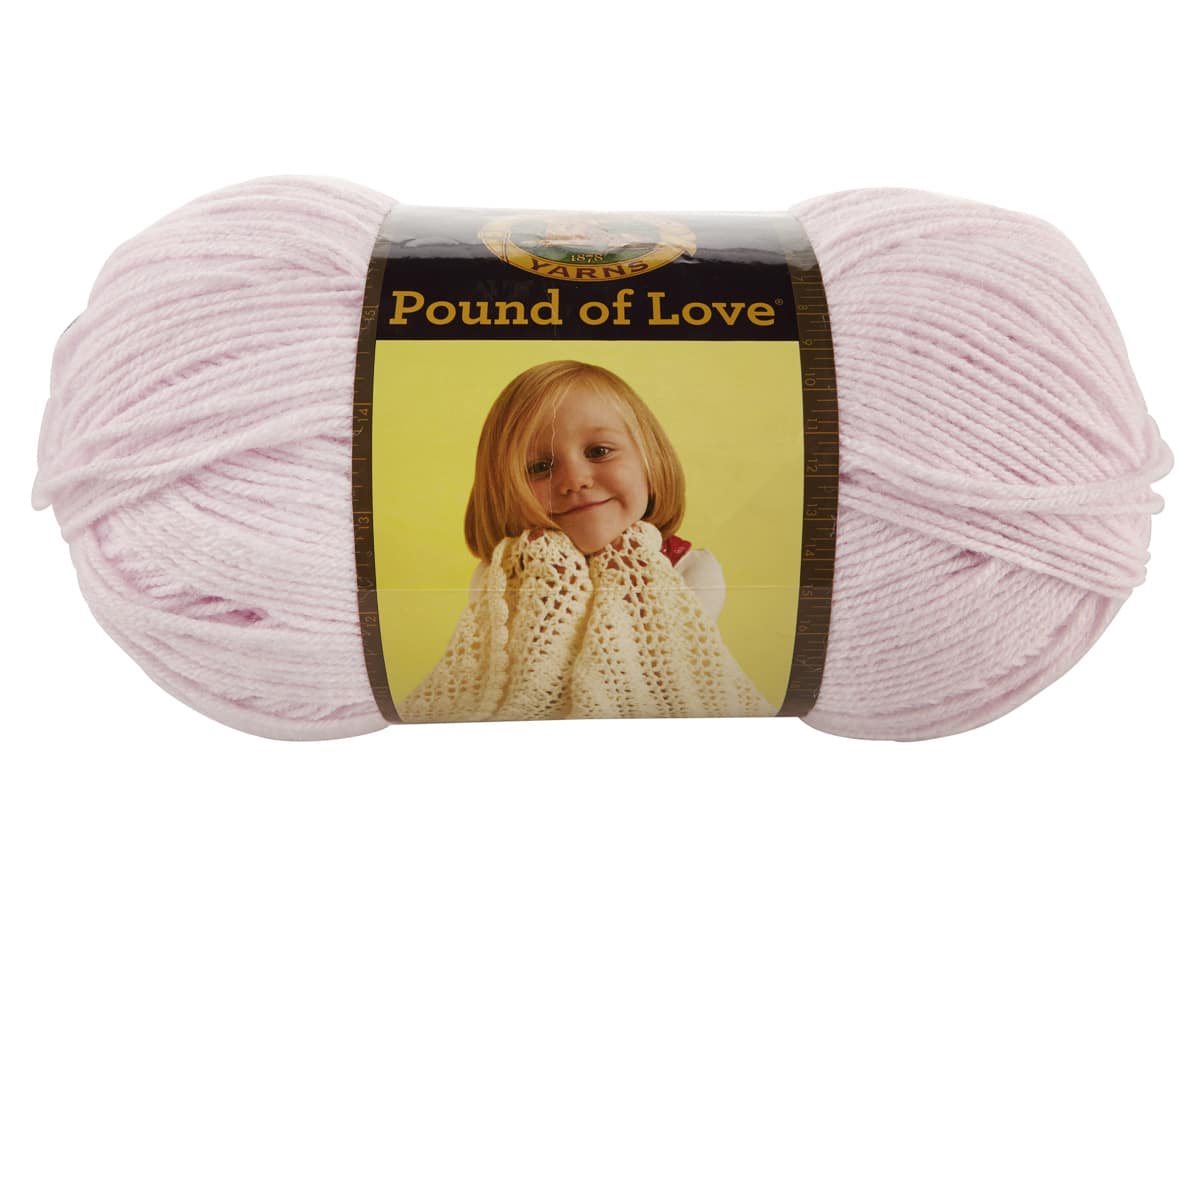 Lion Brand Pound of Love Yarn in Antique White | 16 oz